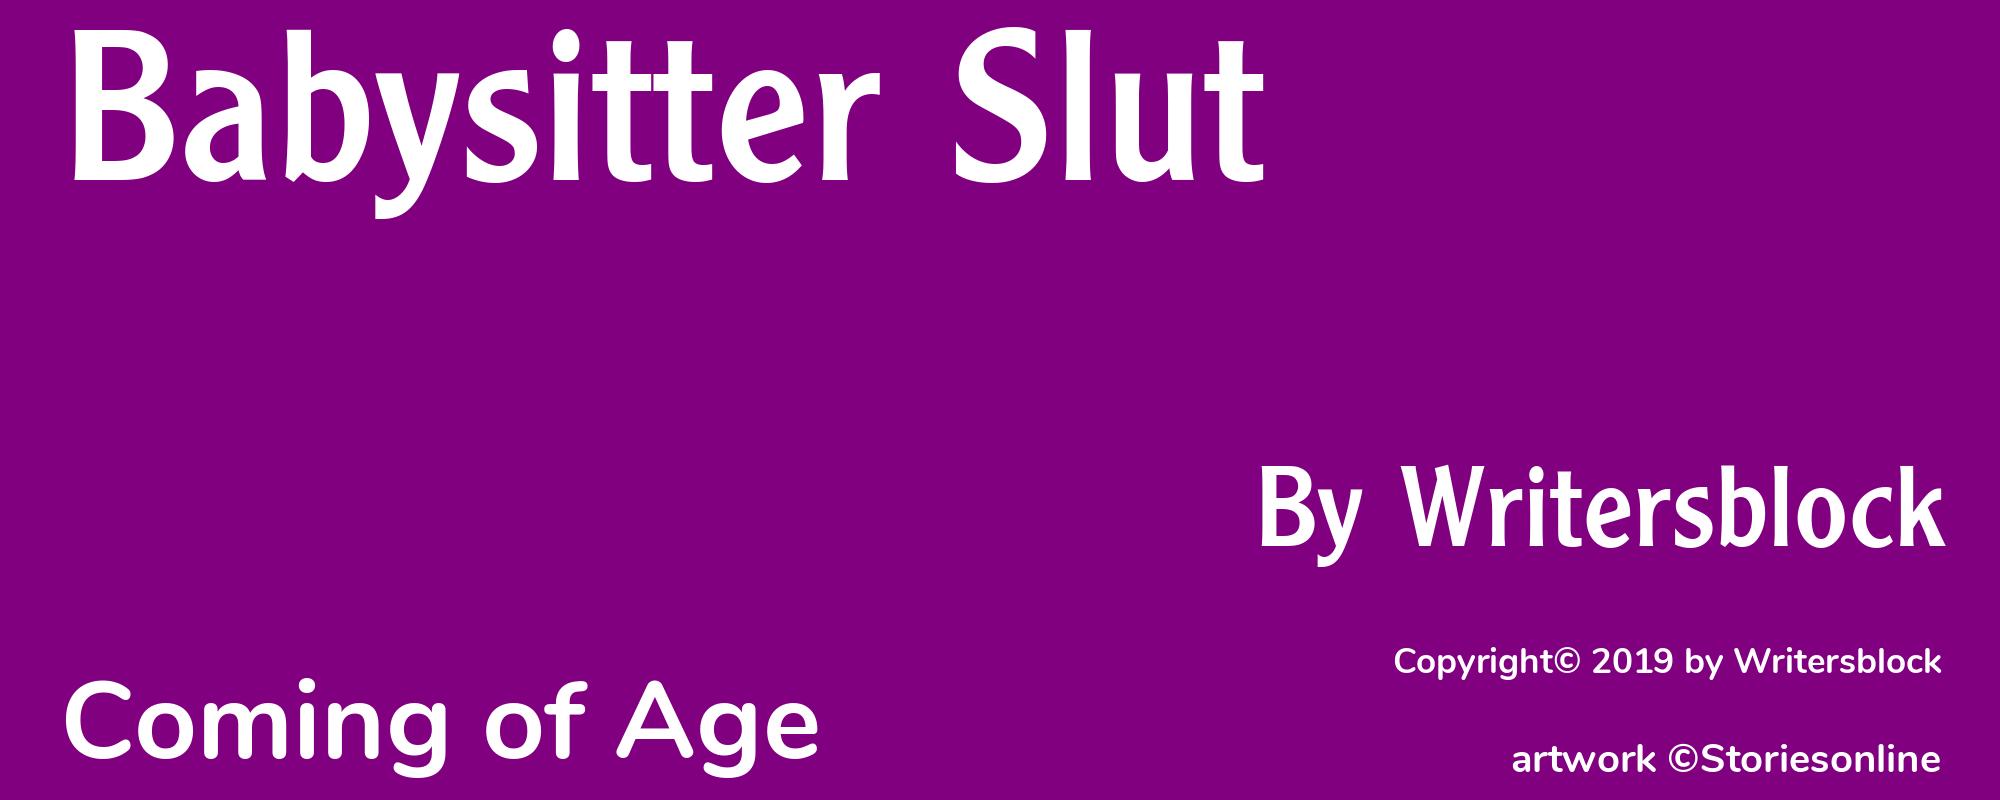 Babysitter Slut - Cover